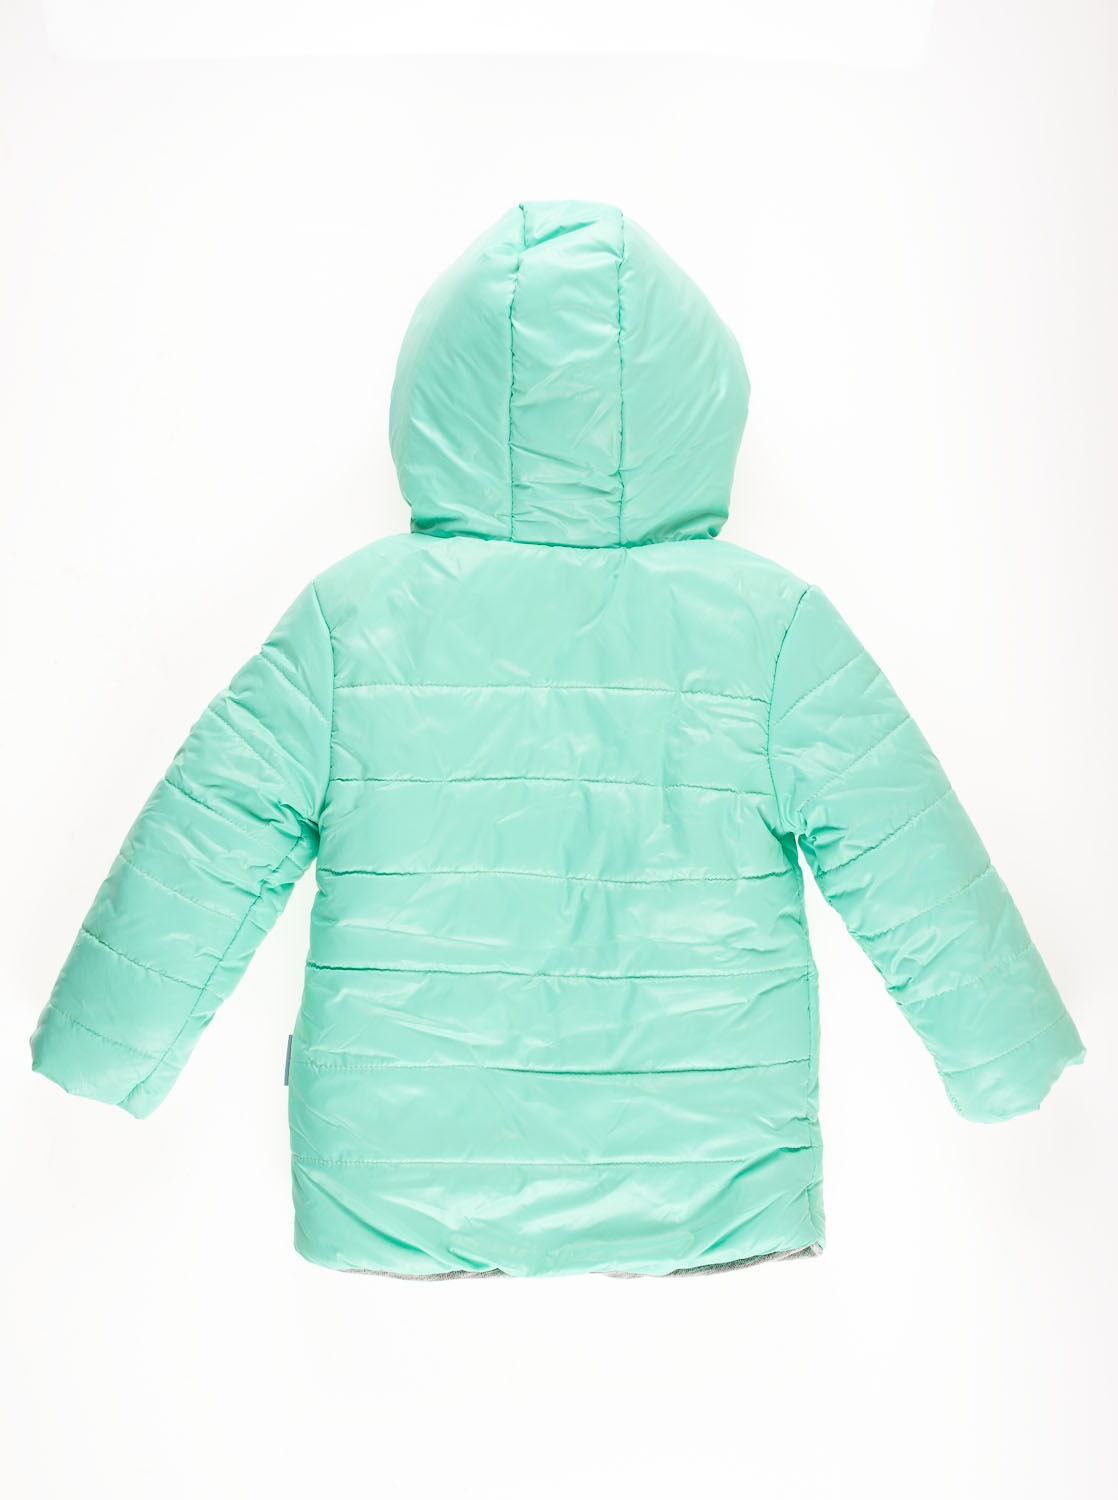 Куртка зимняя для девочки Одягайко мята 20018 - размеры